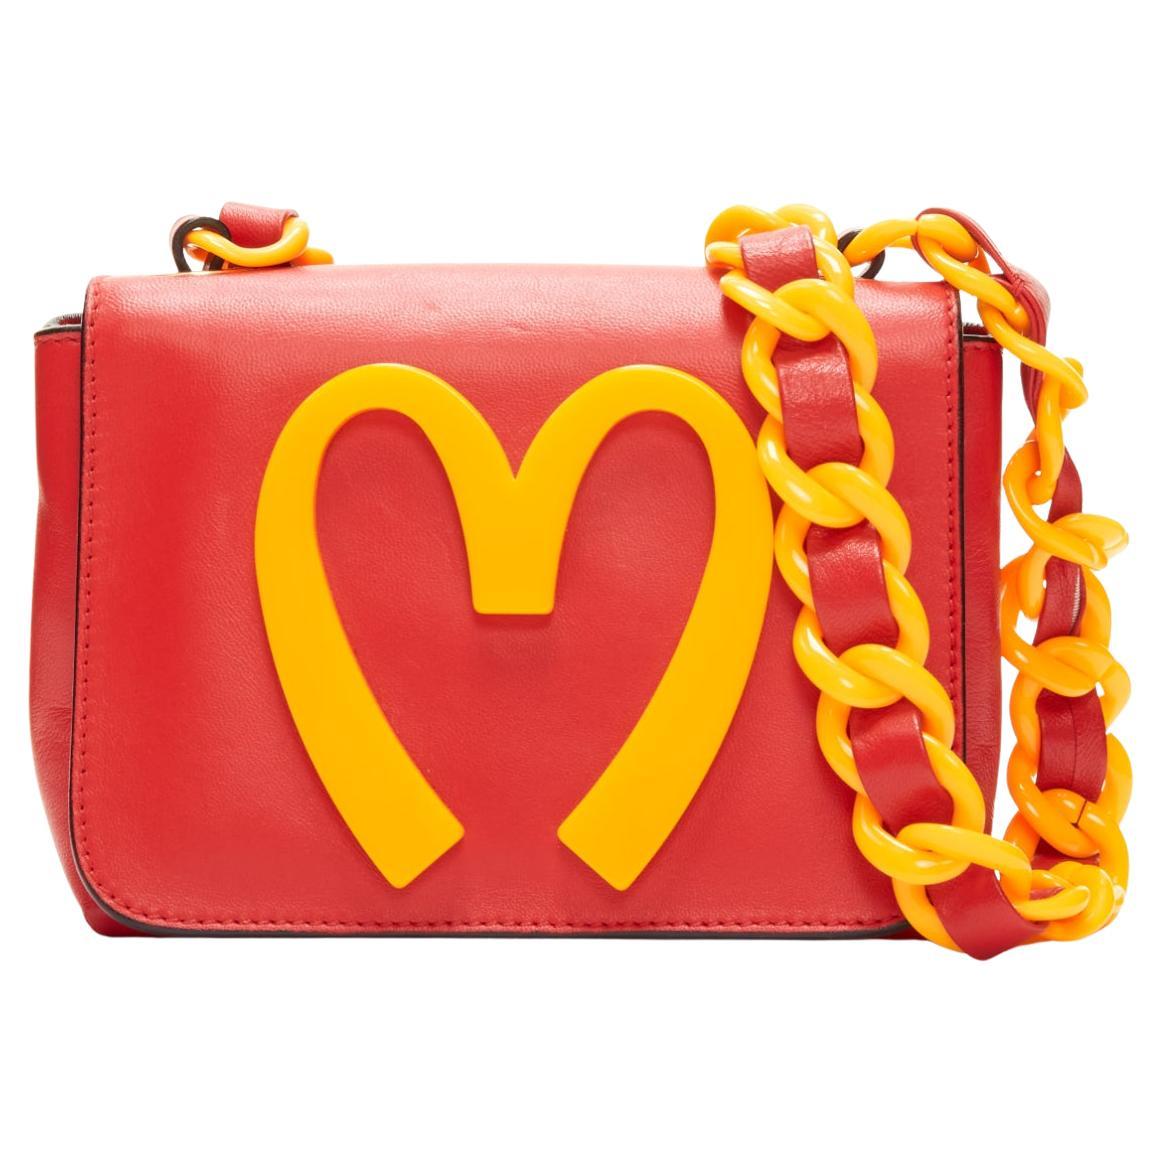 MOSCHINO Jeremy Scott 2014 Crossbody aus rot-gelber Kunststoffkette  Tasche